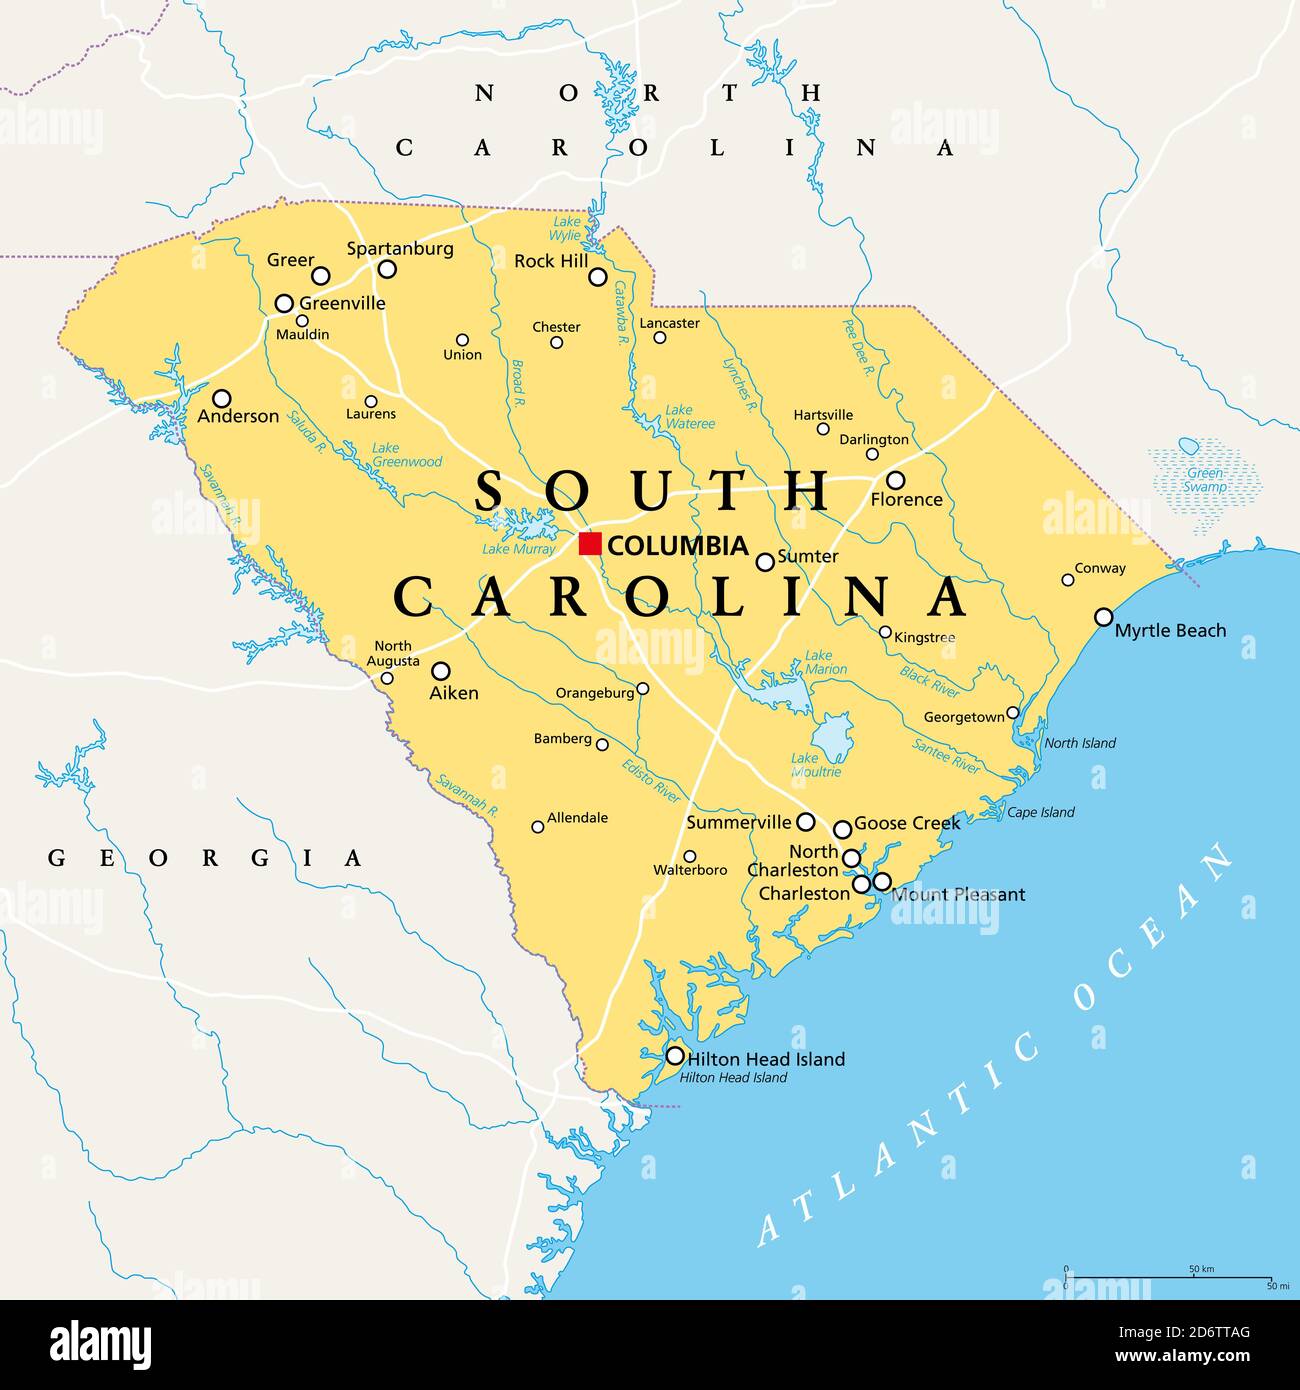 South Carolina, SC, politische Karte, mit der Hauptstadt Columbia, größten Städten und Grenzen. Staat in der südöstlichen Region der Vereinigten Staaten. Stockfoto